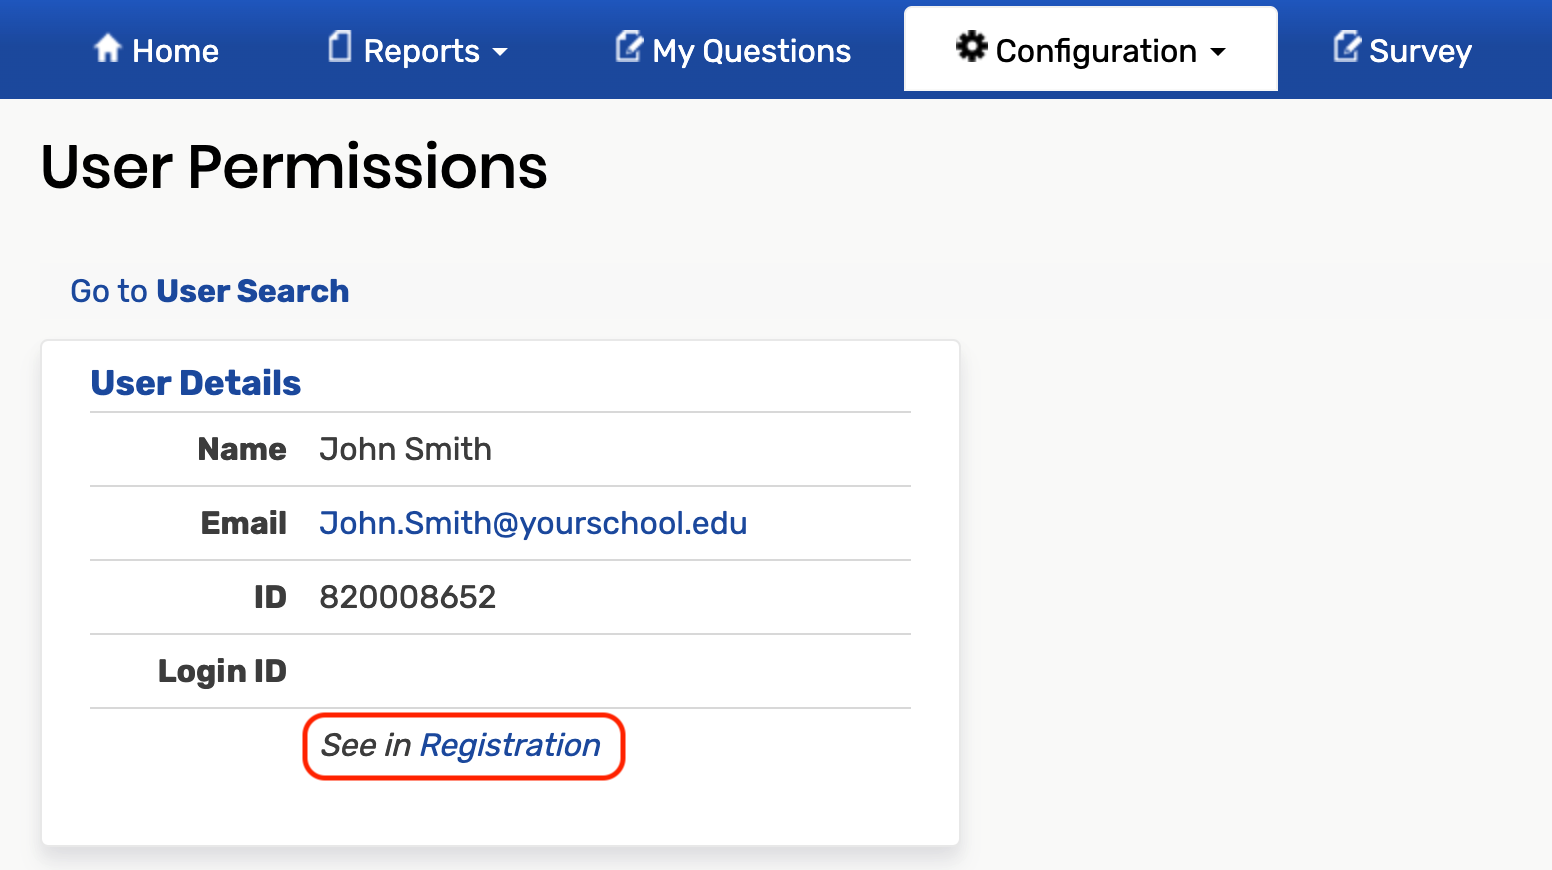 Registration link below login ID field